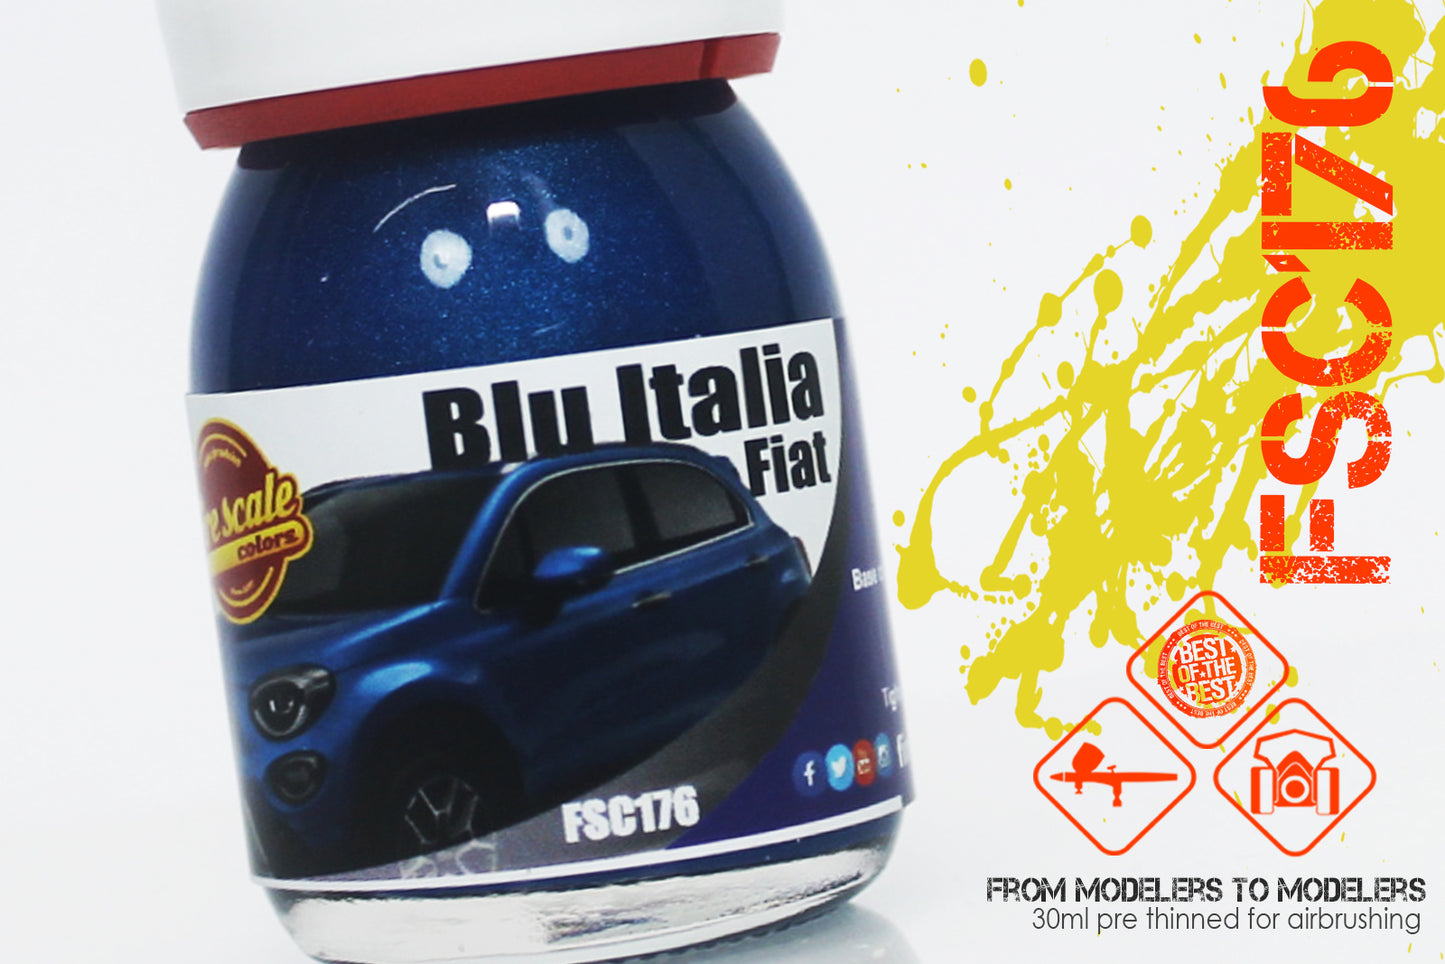 Blu Italia Fiat